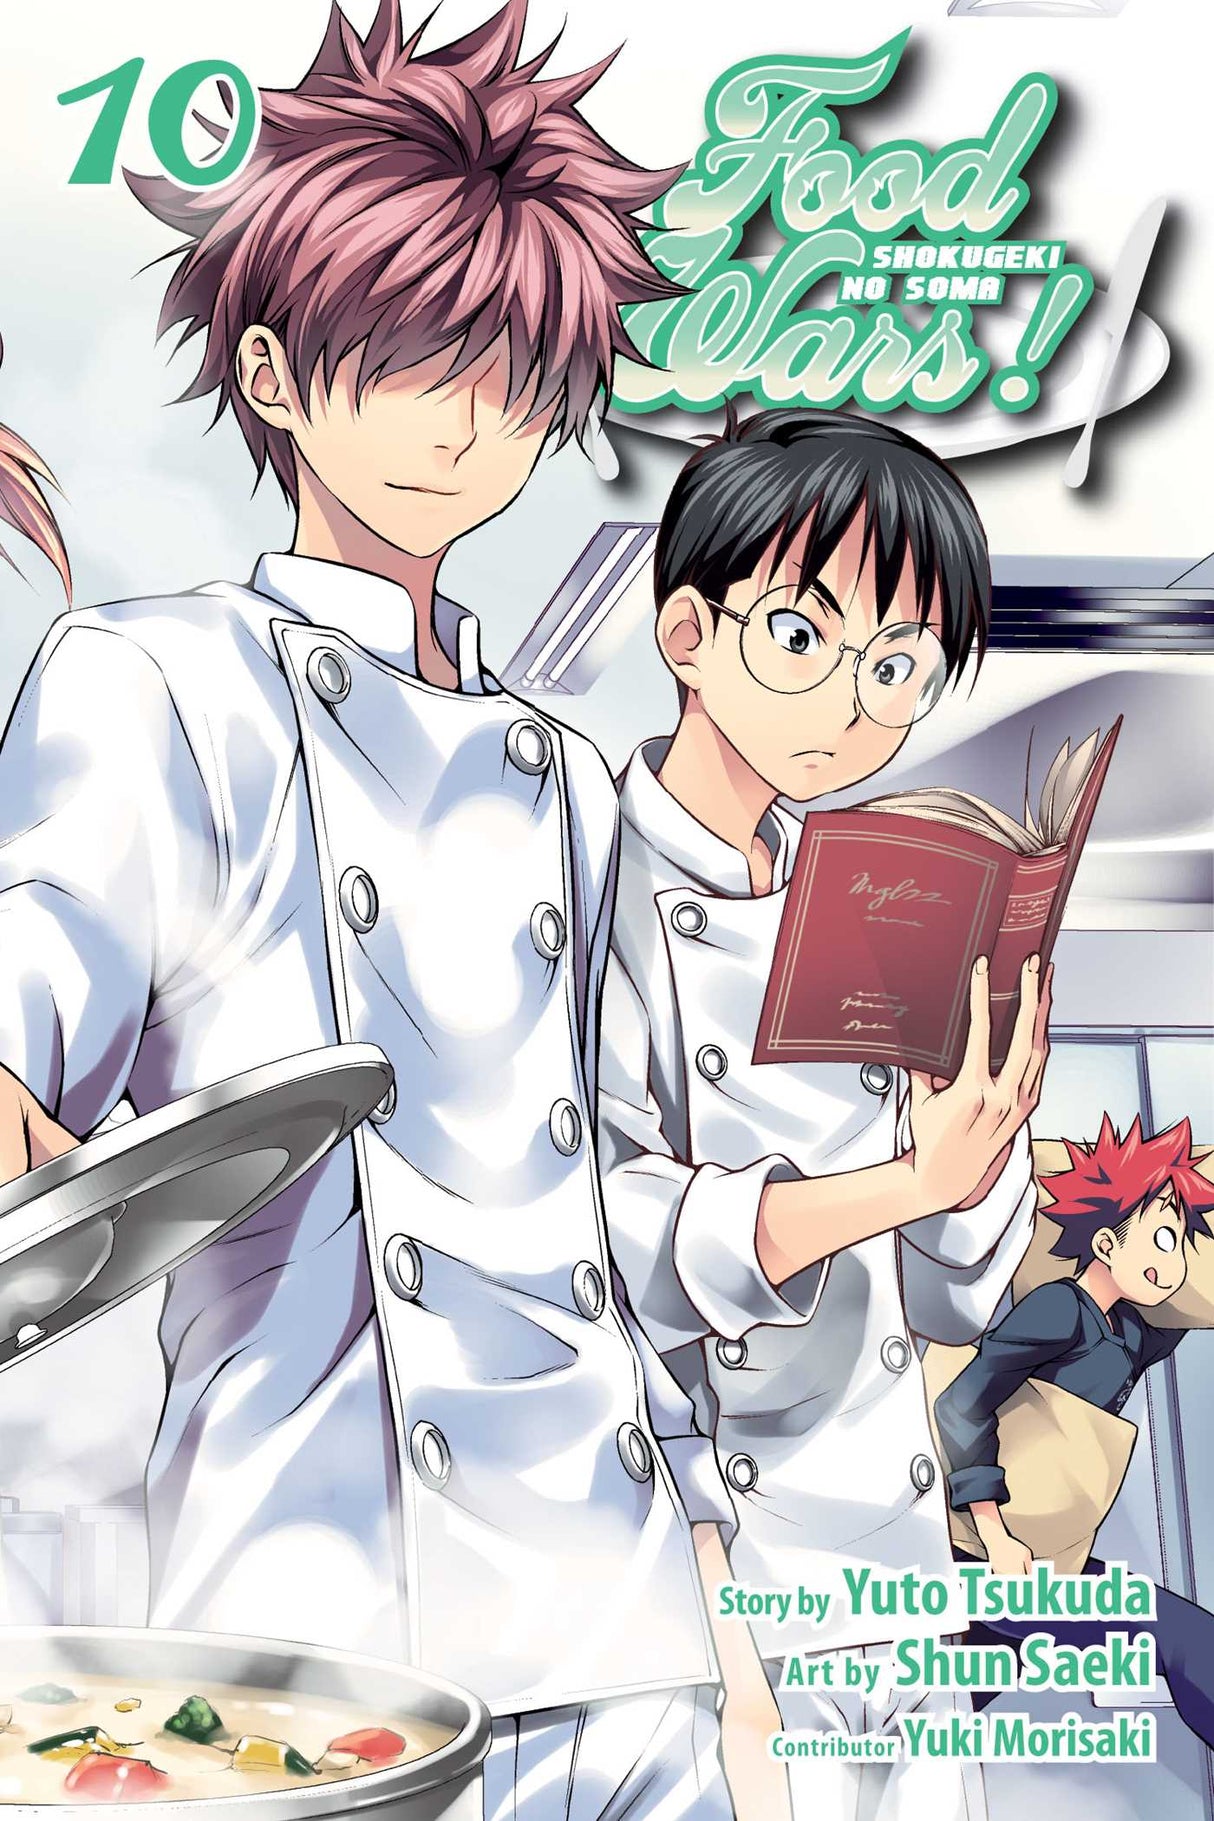 Cover image of the Manga Food-Wars!-Shokugeki-no-Soma-Vol-10